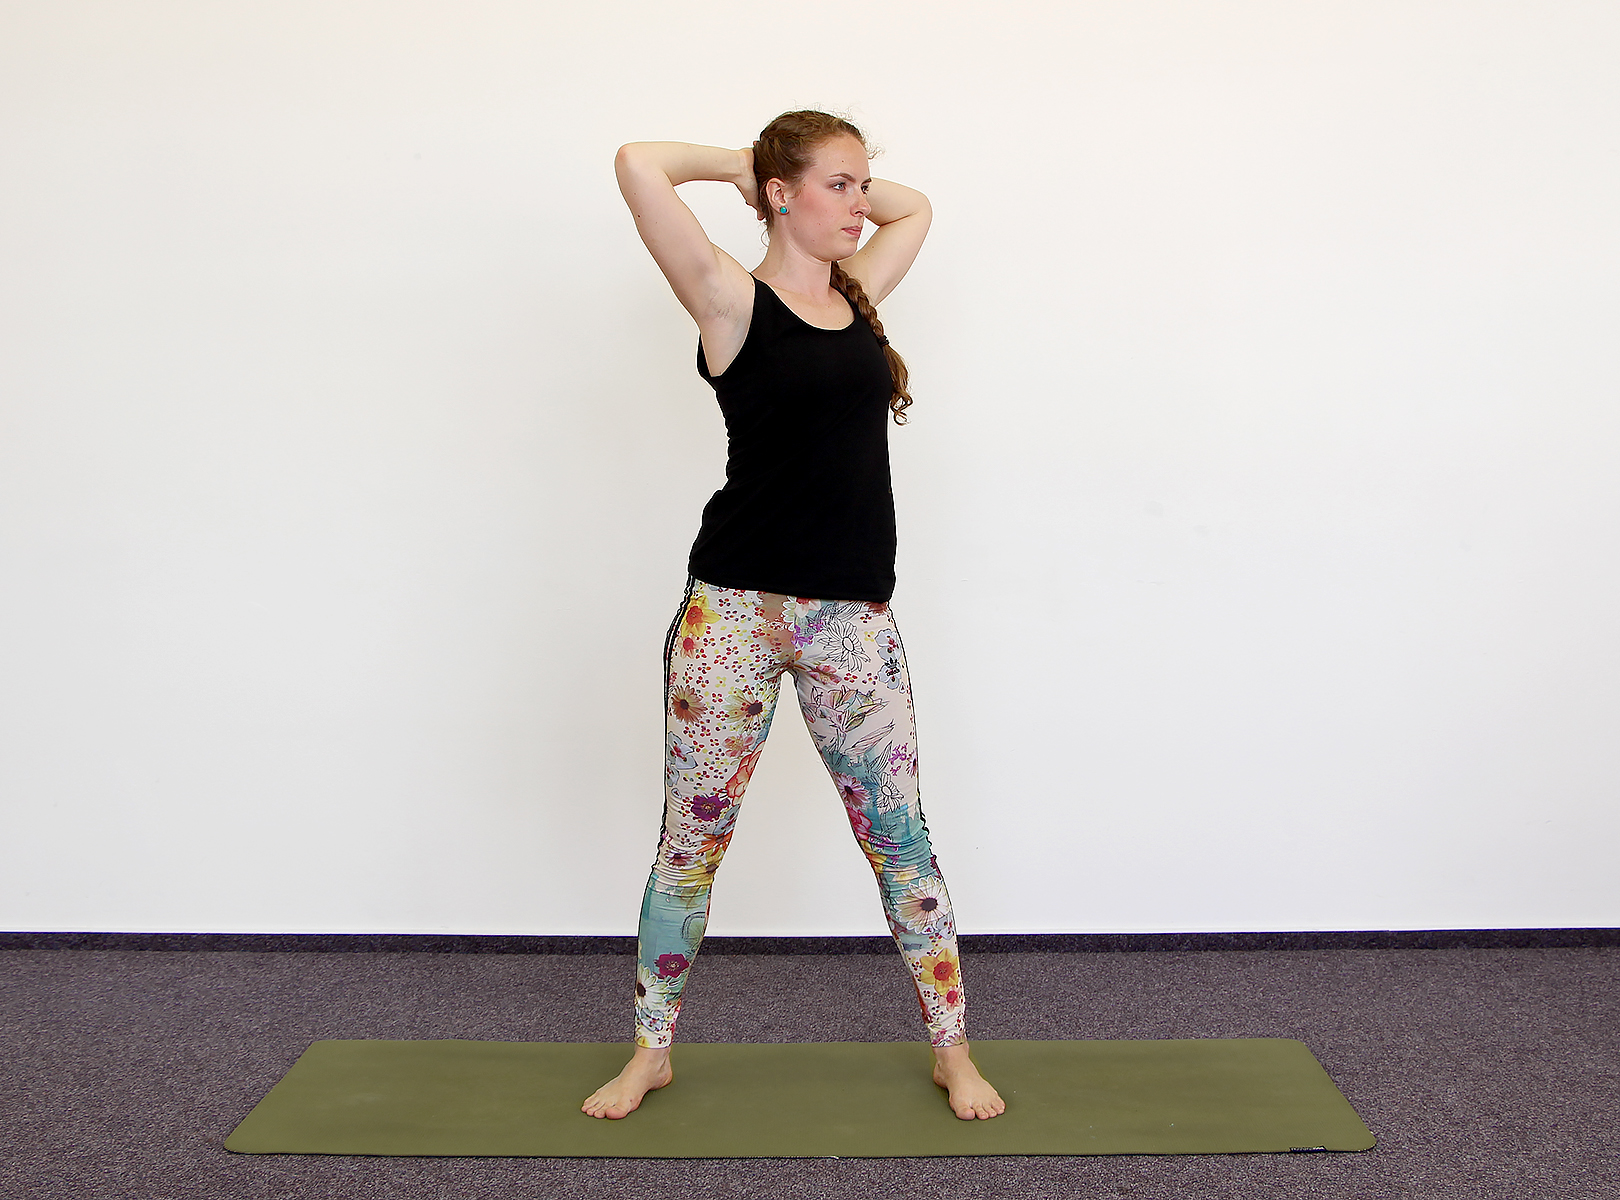 20 min Standing Yoga For Beginners | Back To Basics | Beginner Hatha Yoga -  YouTube